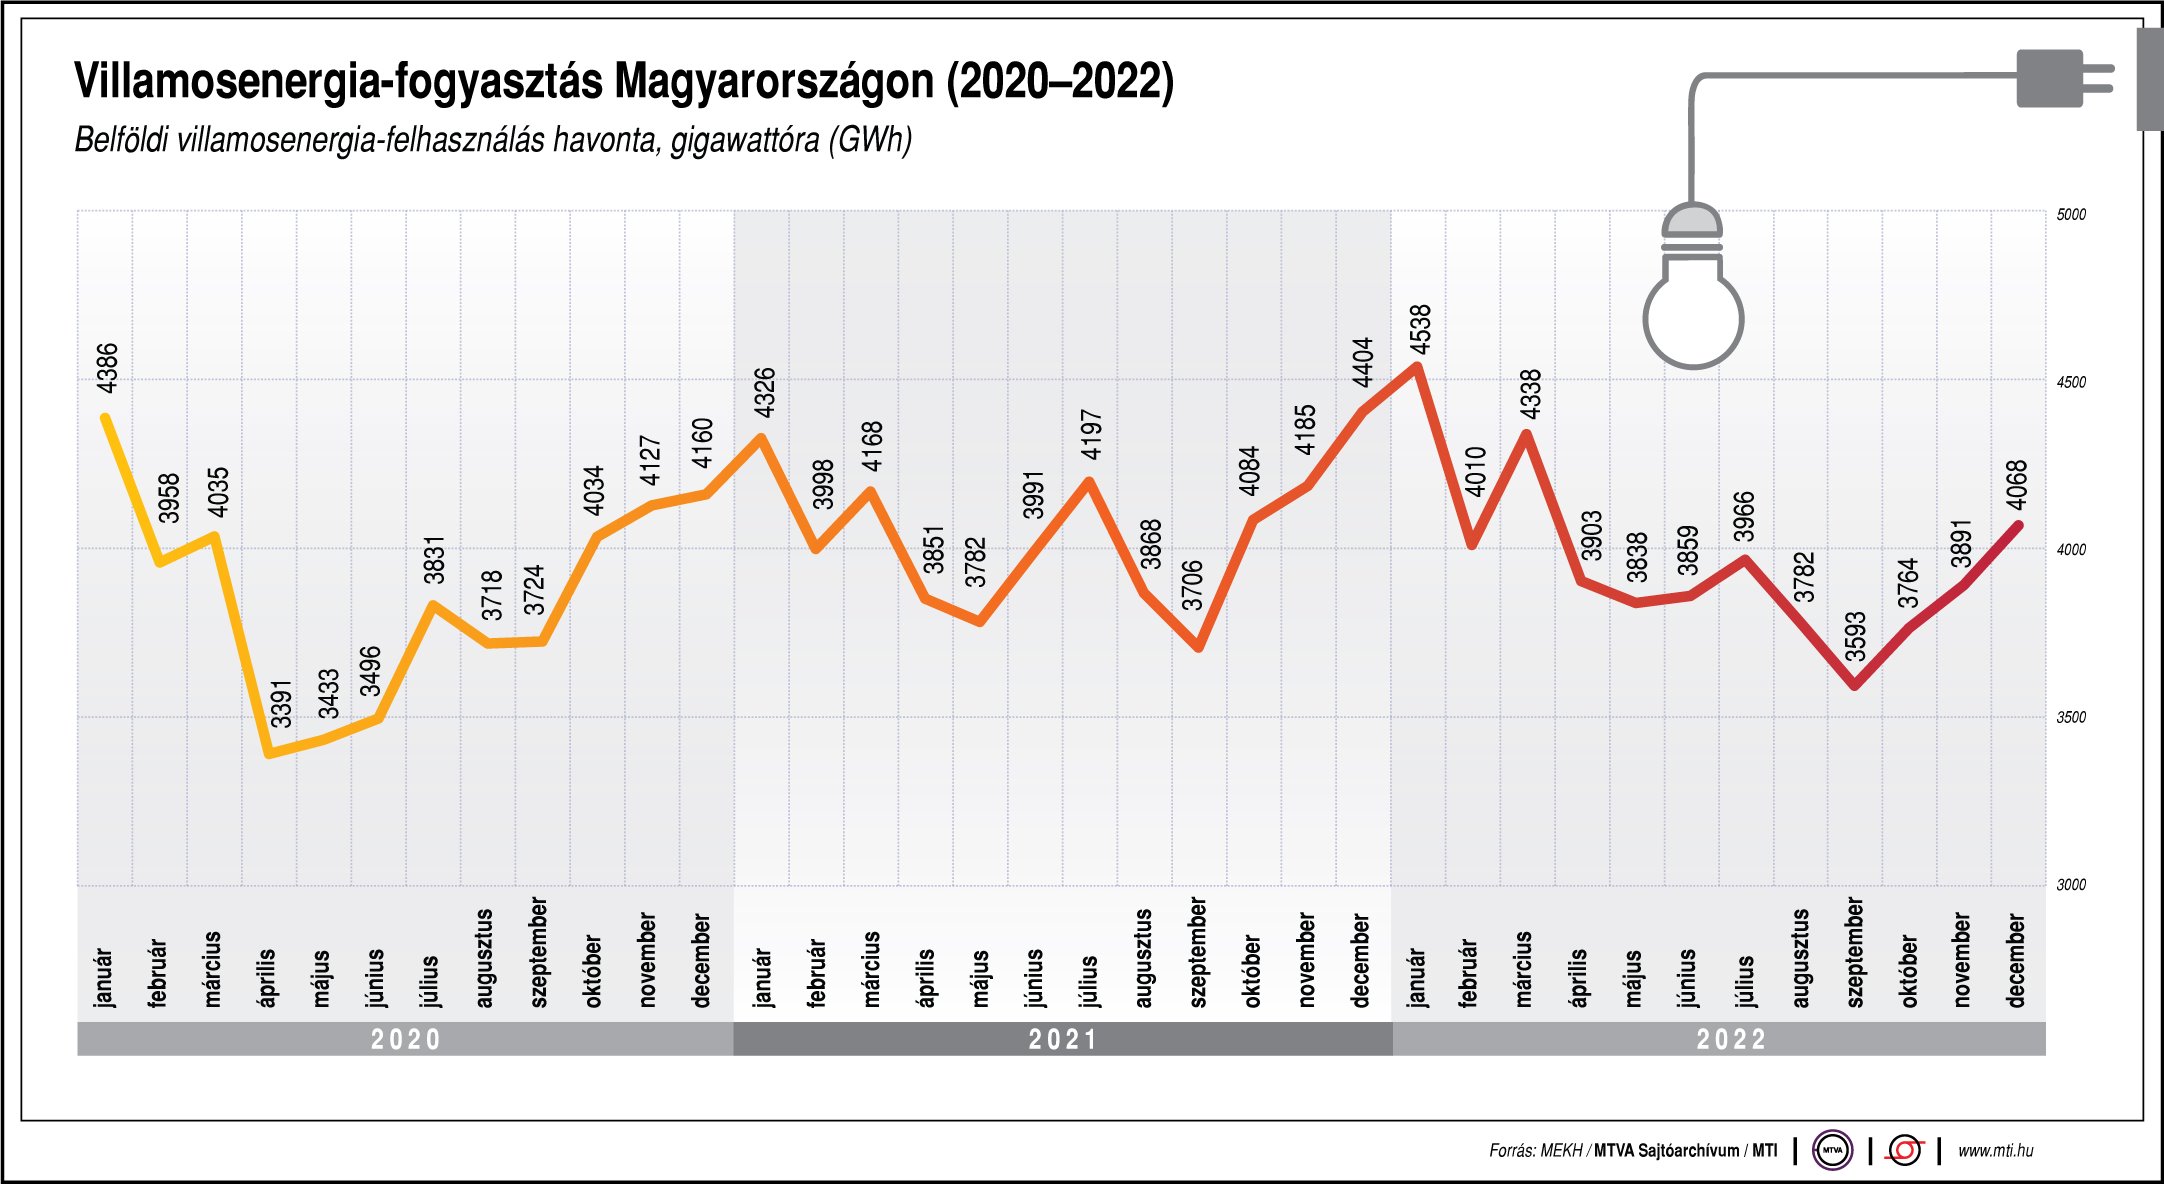 Villamosenergia-fogyasztás Magyarországon 2020-2022